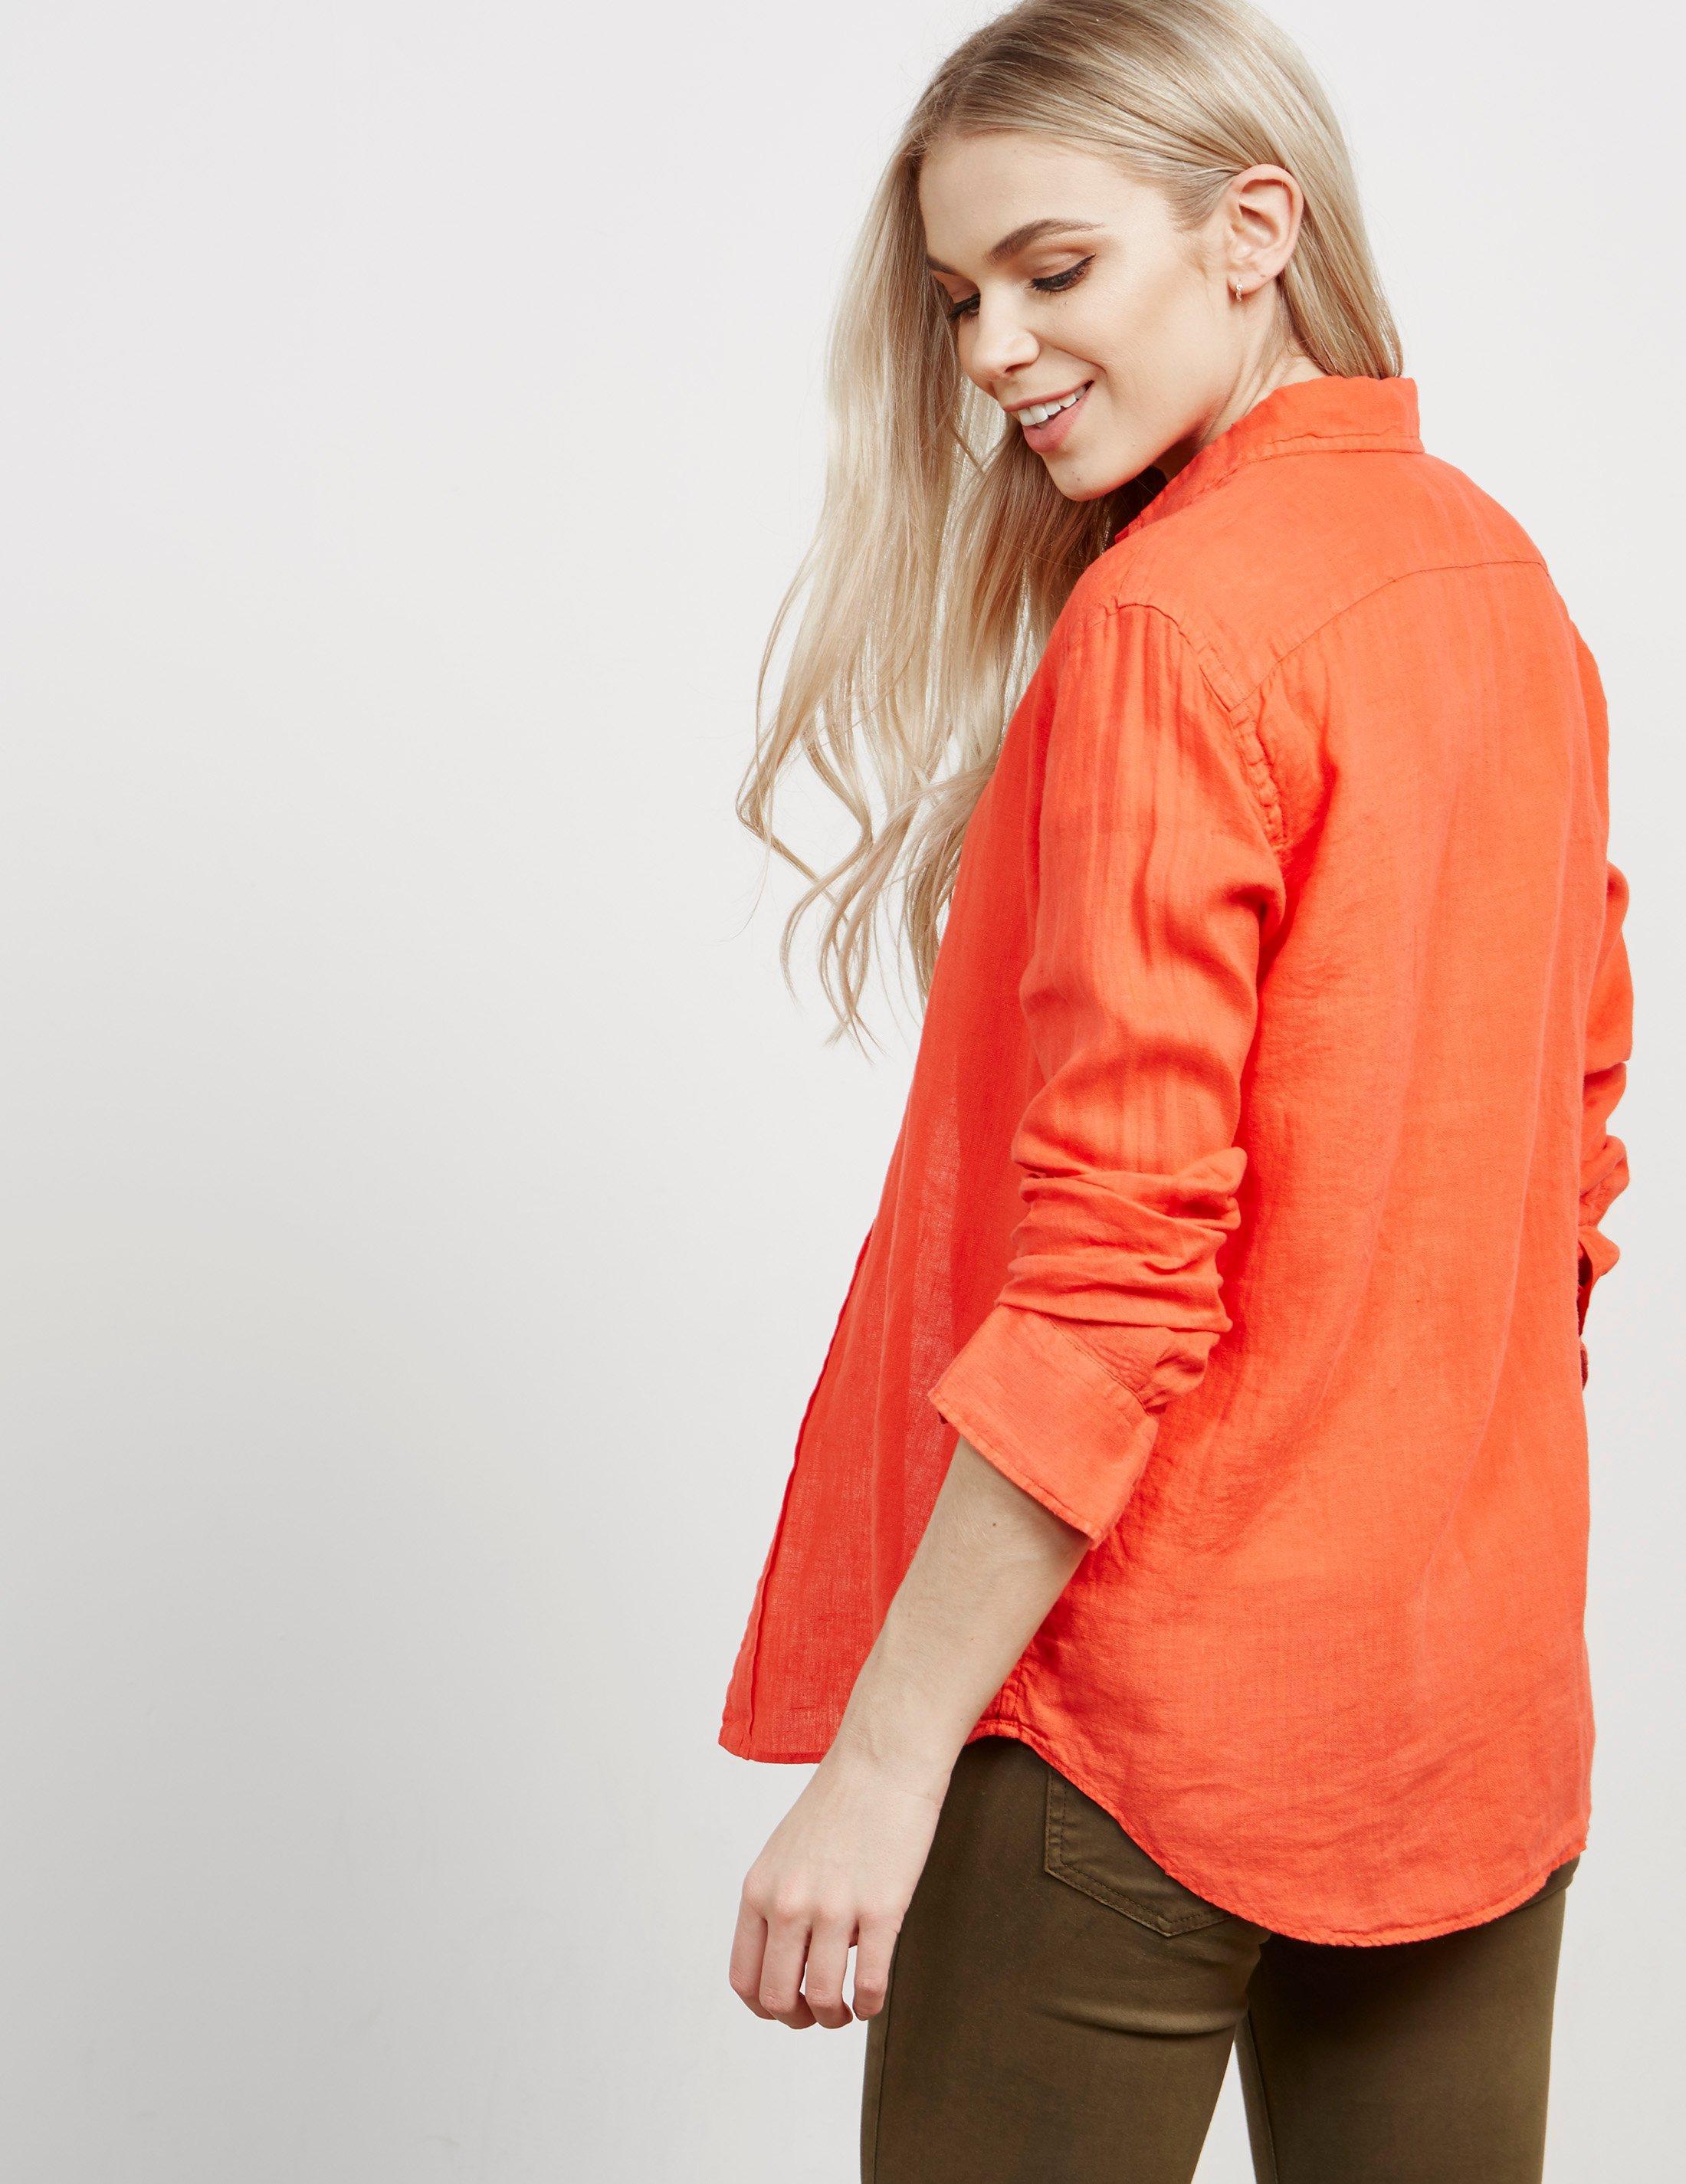 Polo Ralph Lauren Womens Linen Long Sleeve Shirt - Online Exclusive ...